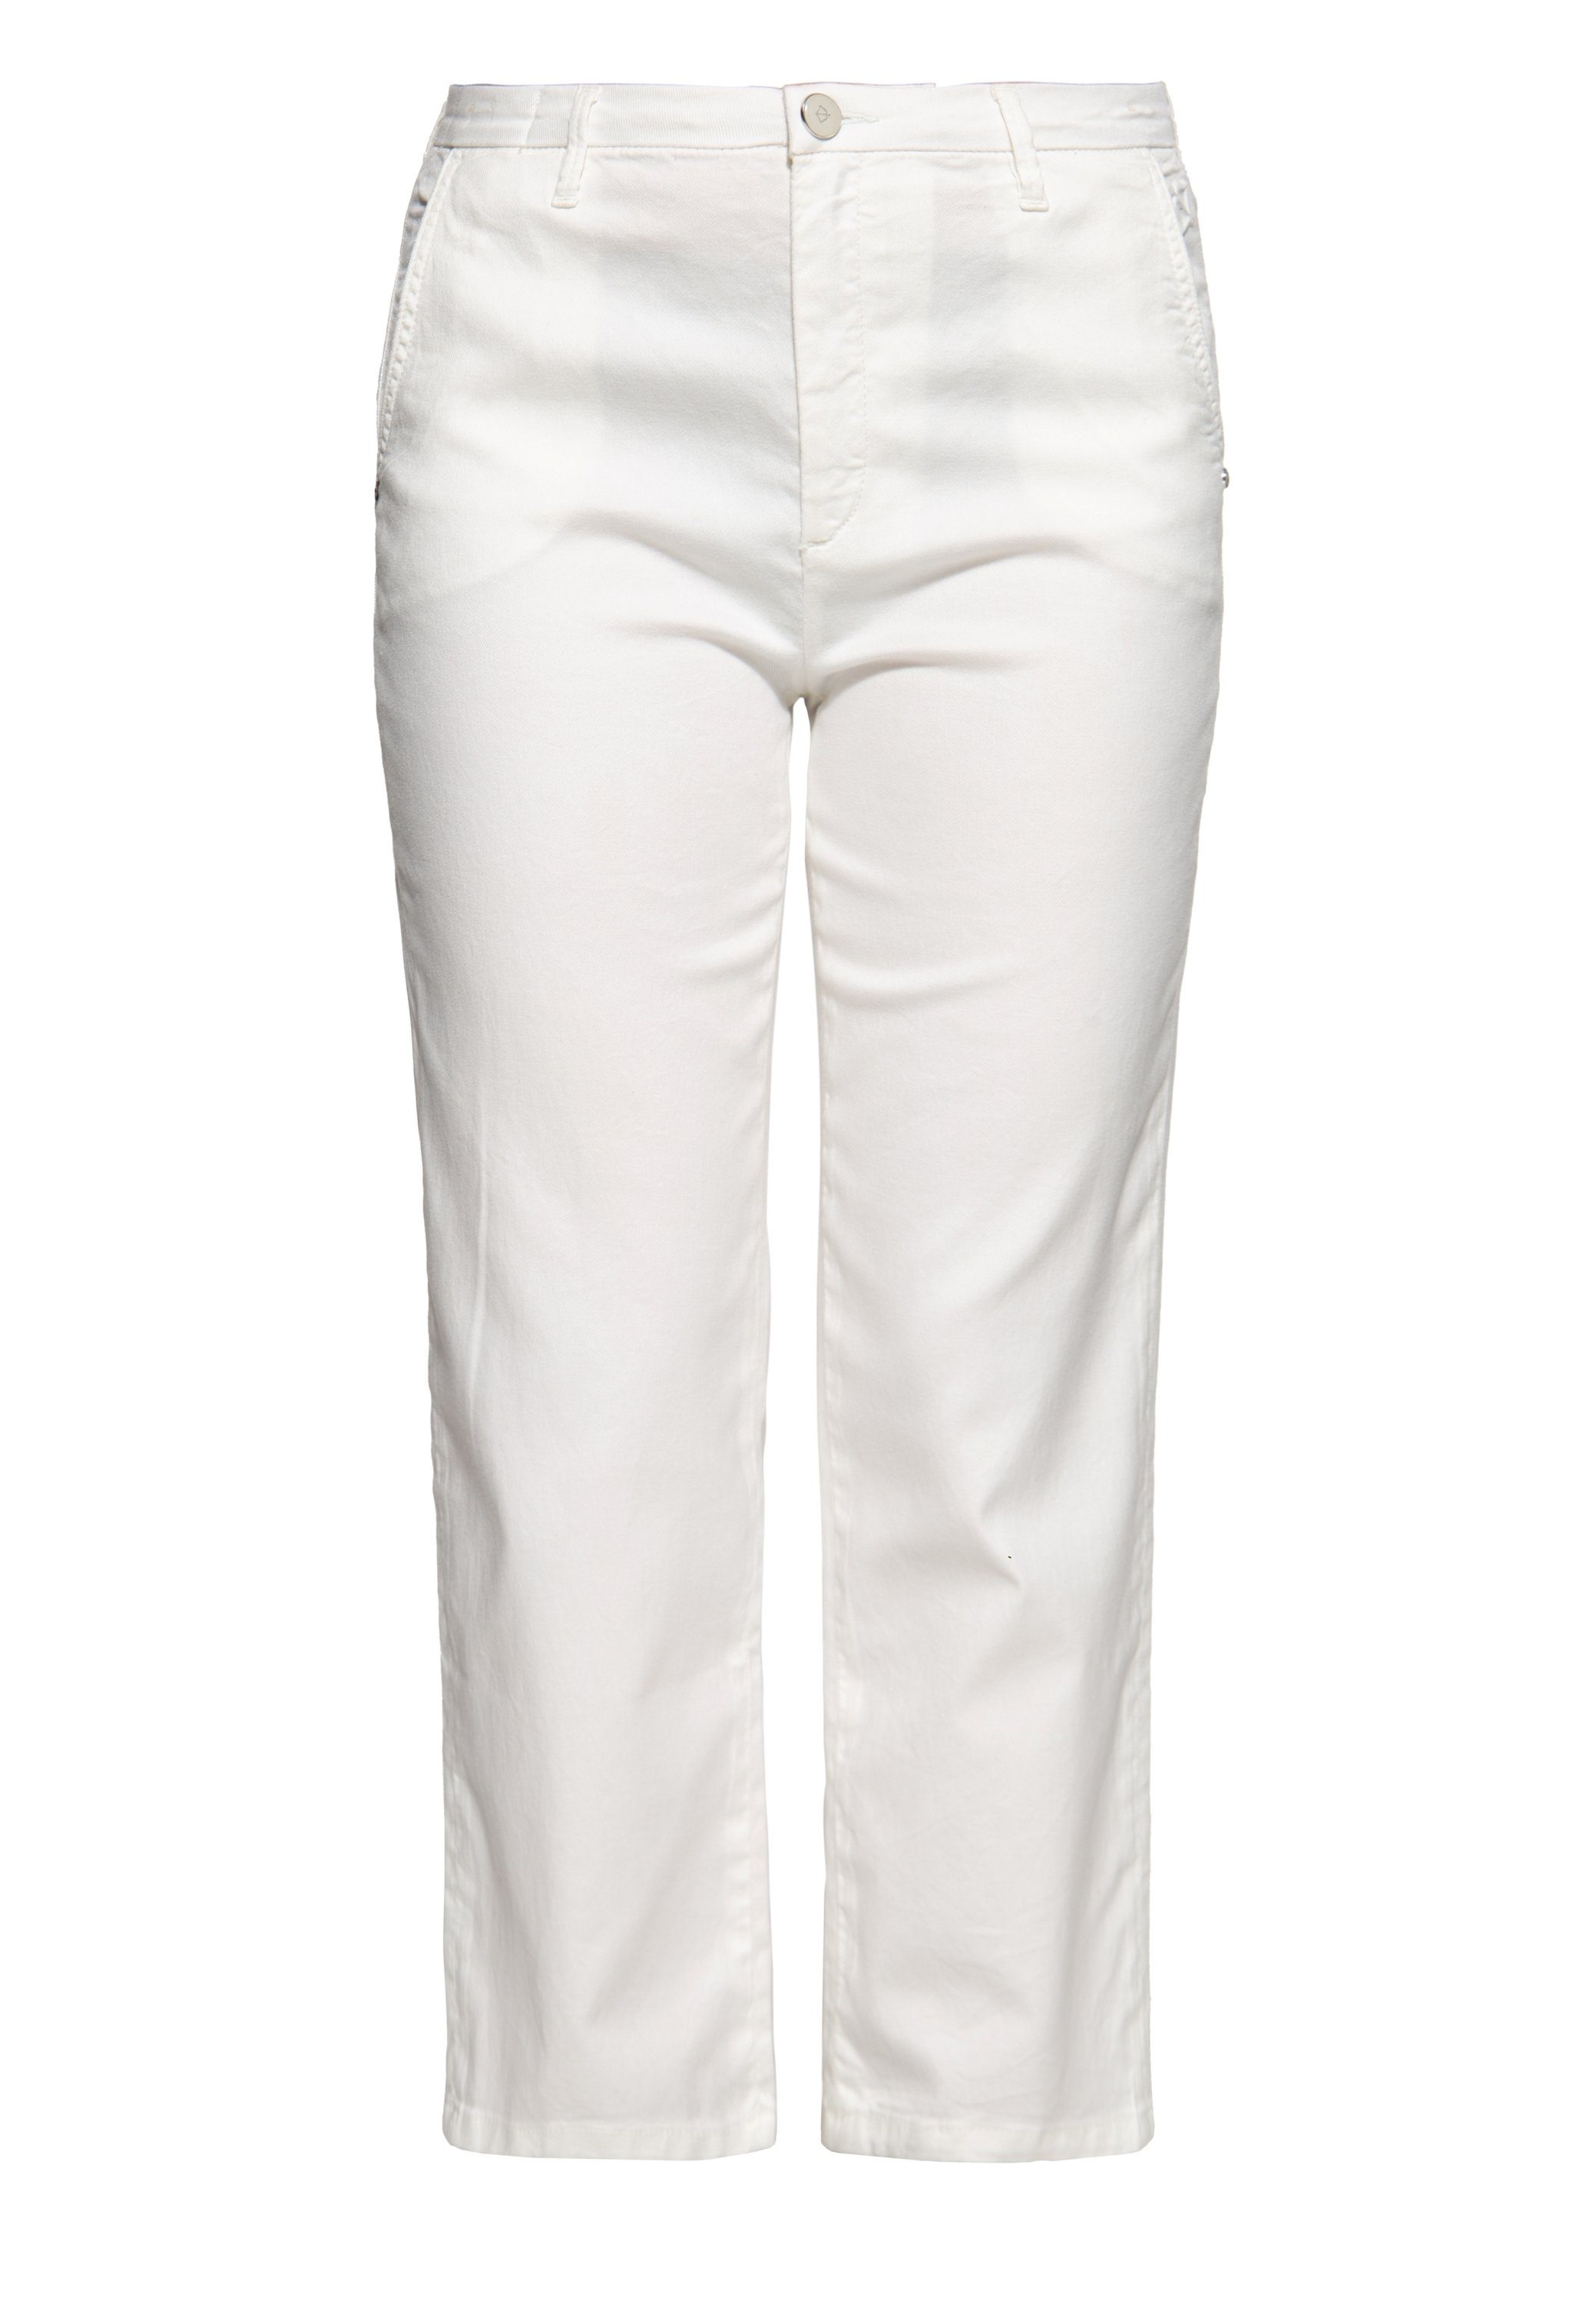 ATT Jeans Stoffhose Star aus hautfreundlichem Lyocell-Mix weiß | Stoffhosen